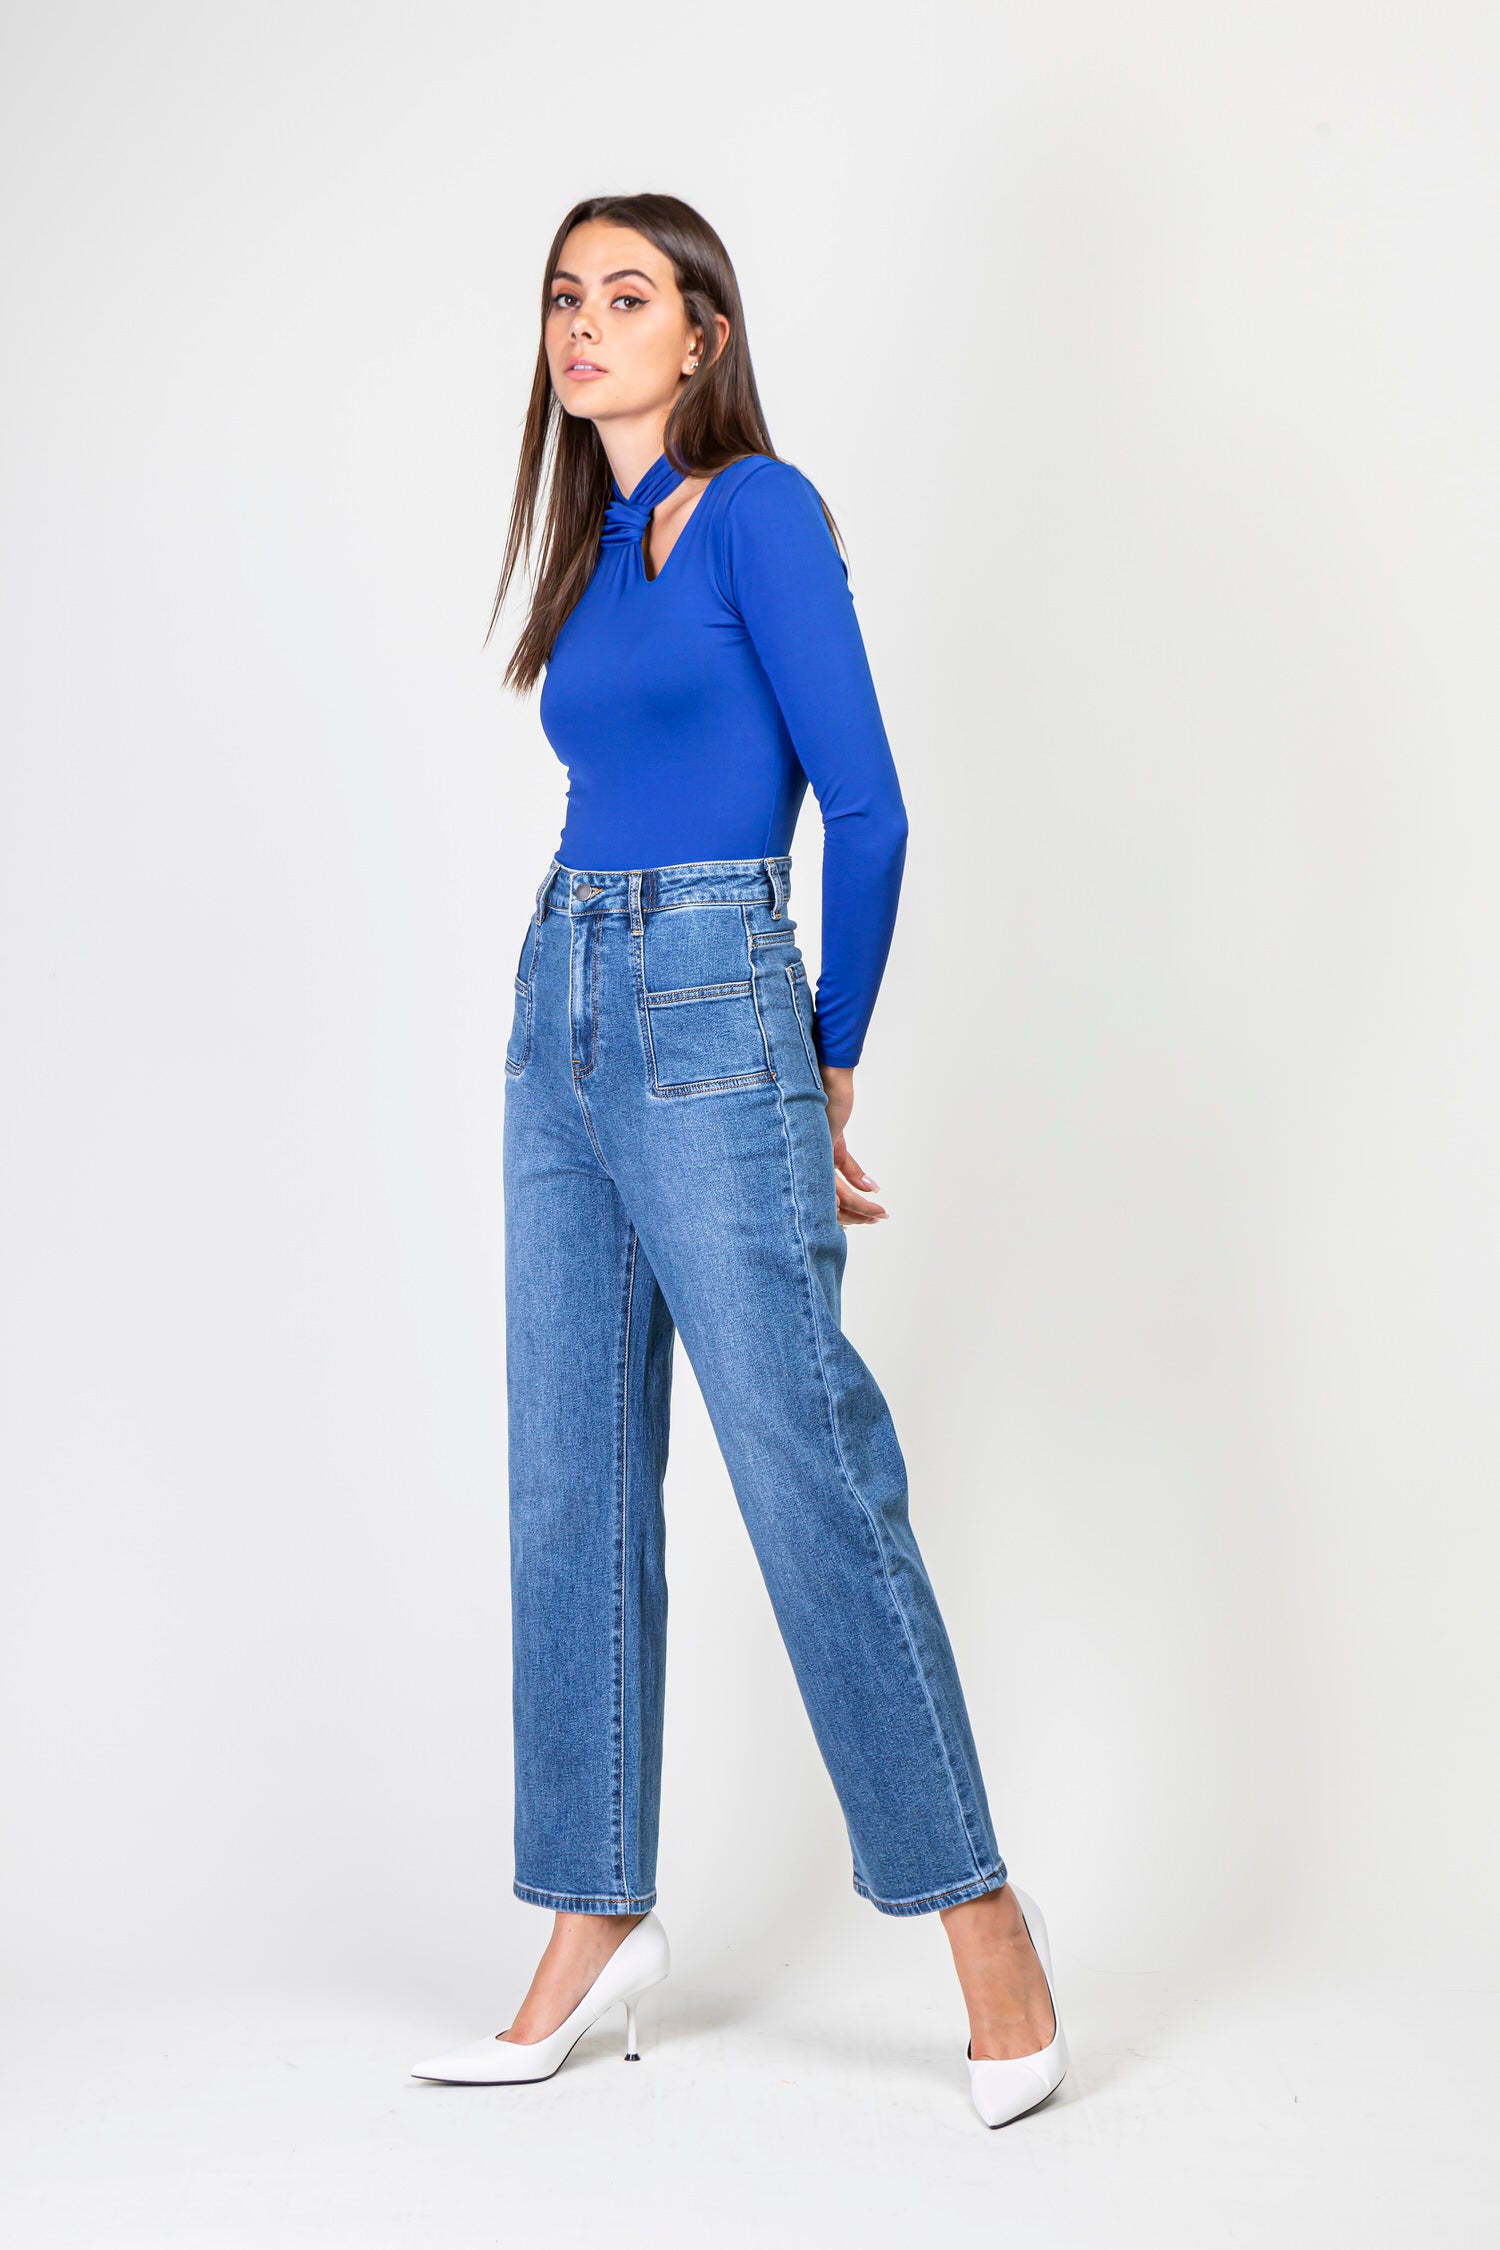 Jeans voorkant van de voorkant van de jeans - zorg